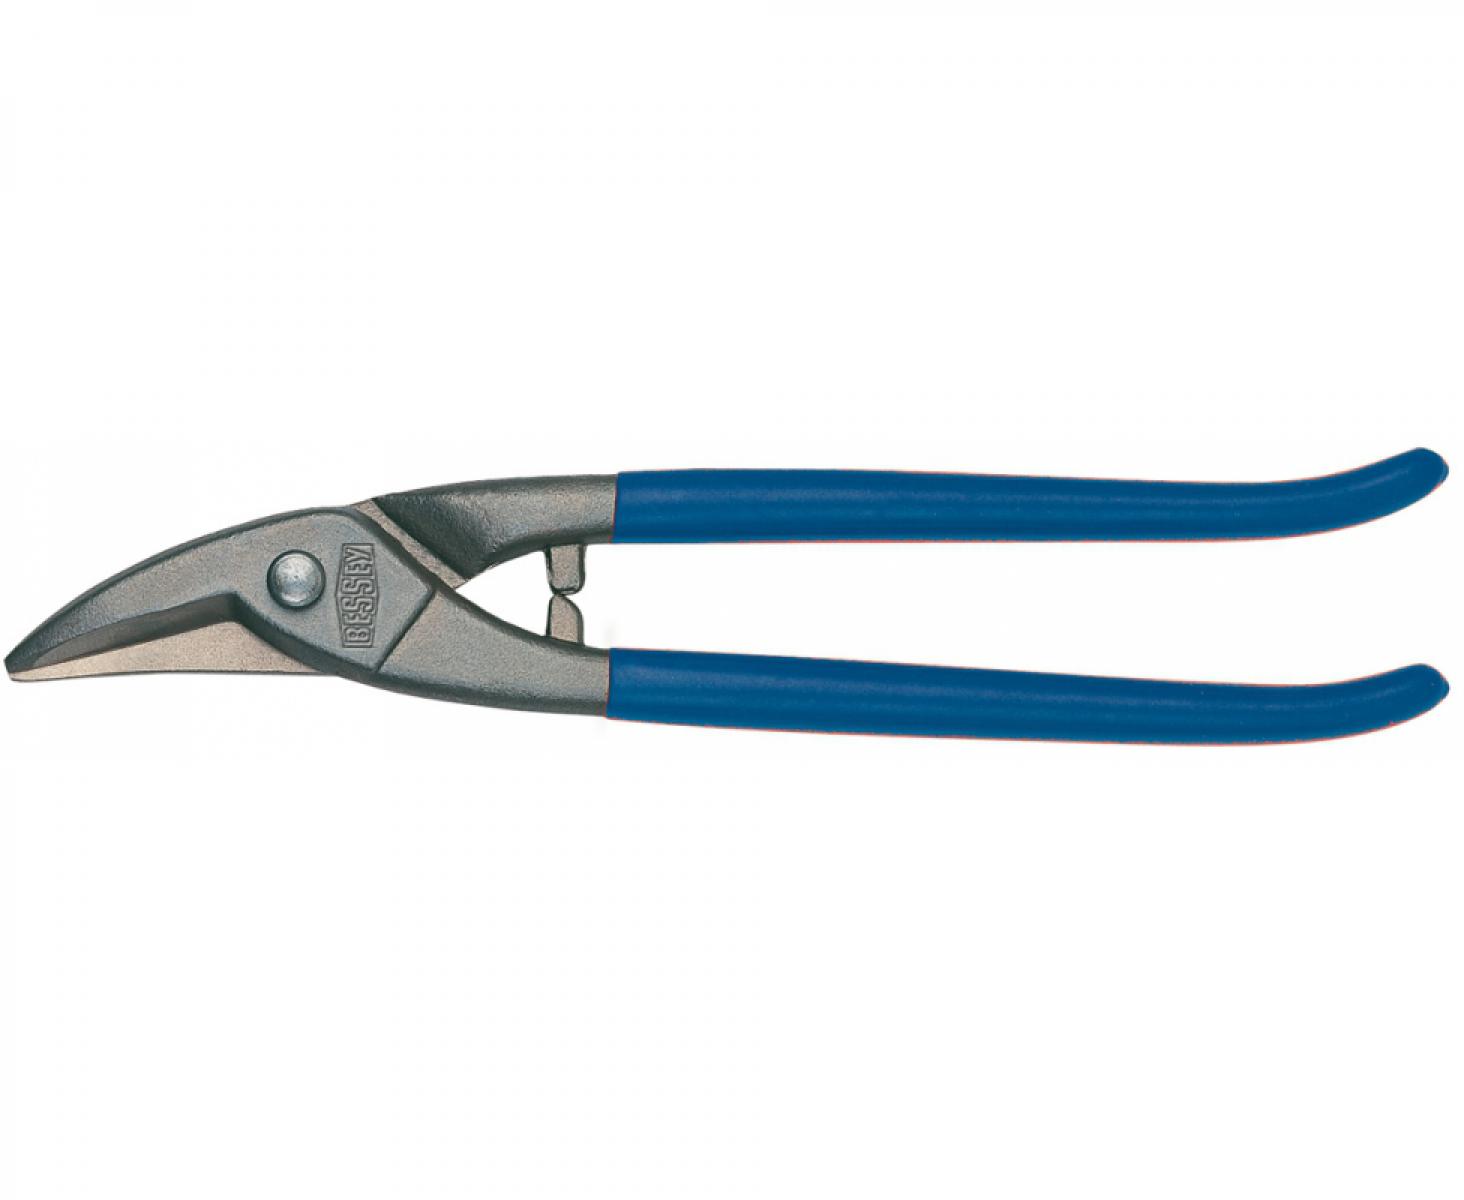 Ножницы для прорезания отверстий в листовом металле Erdi ER-D207-275 праворежущие